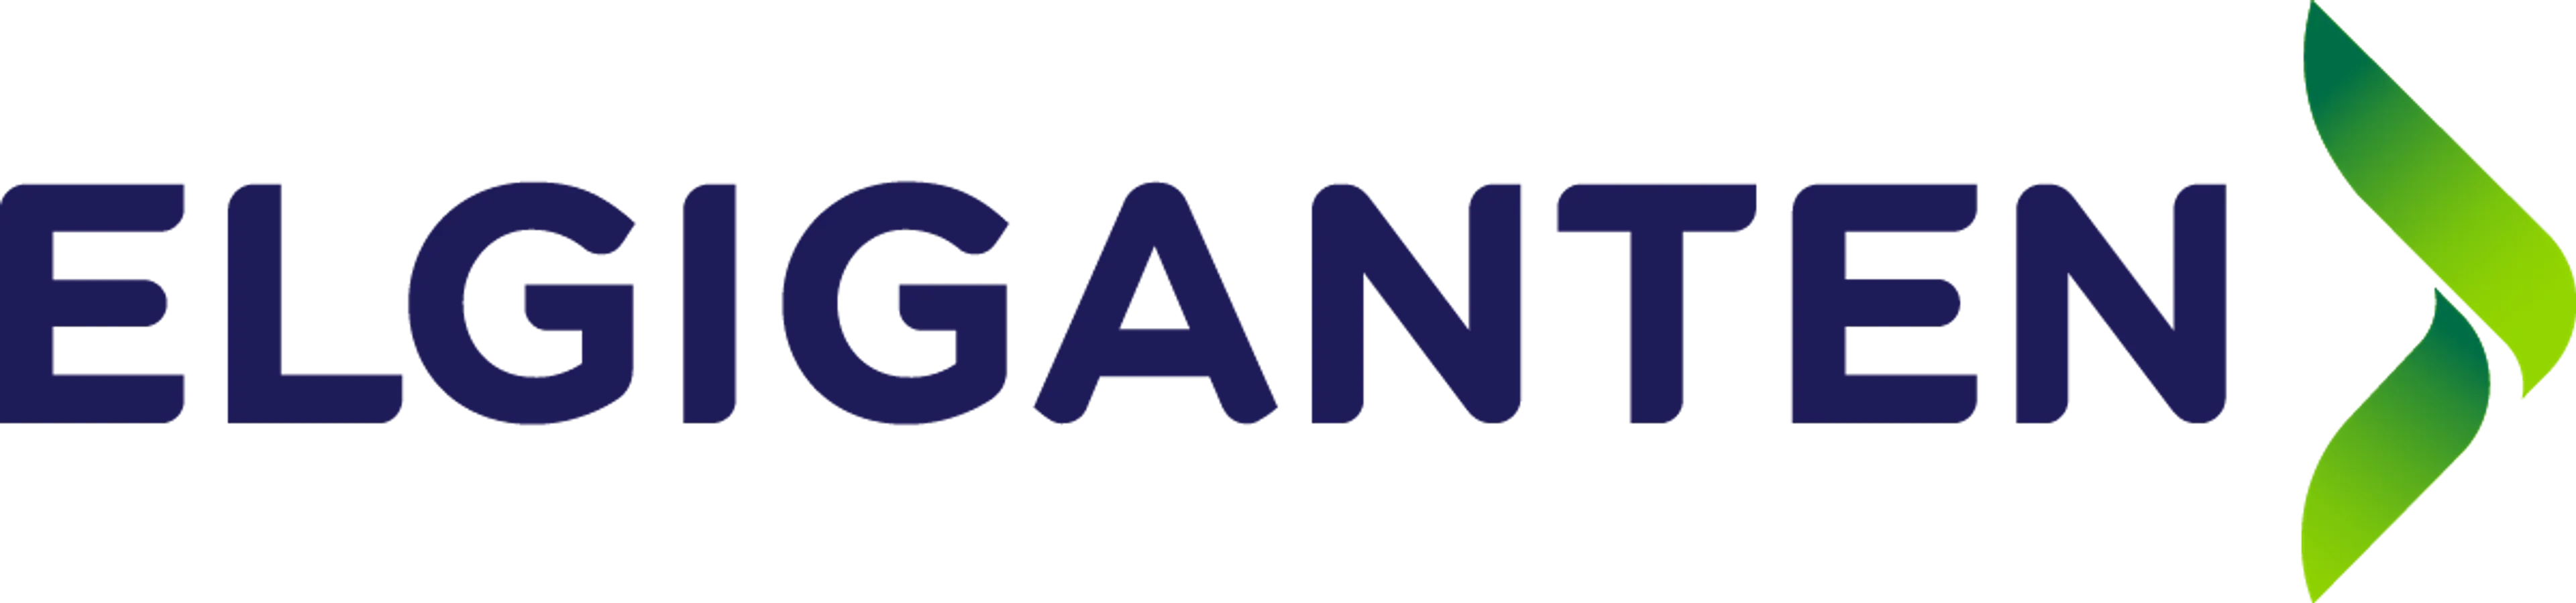 ELGIGANTEN logo